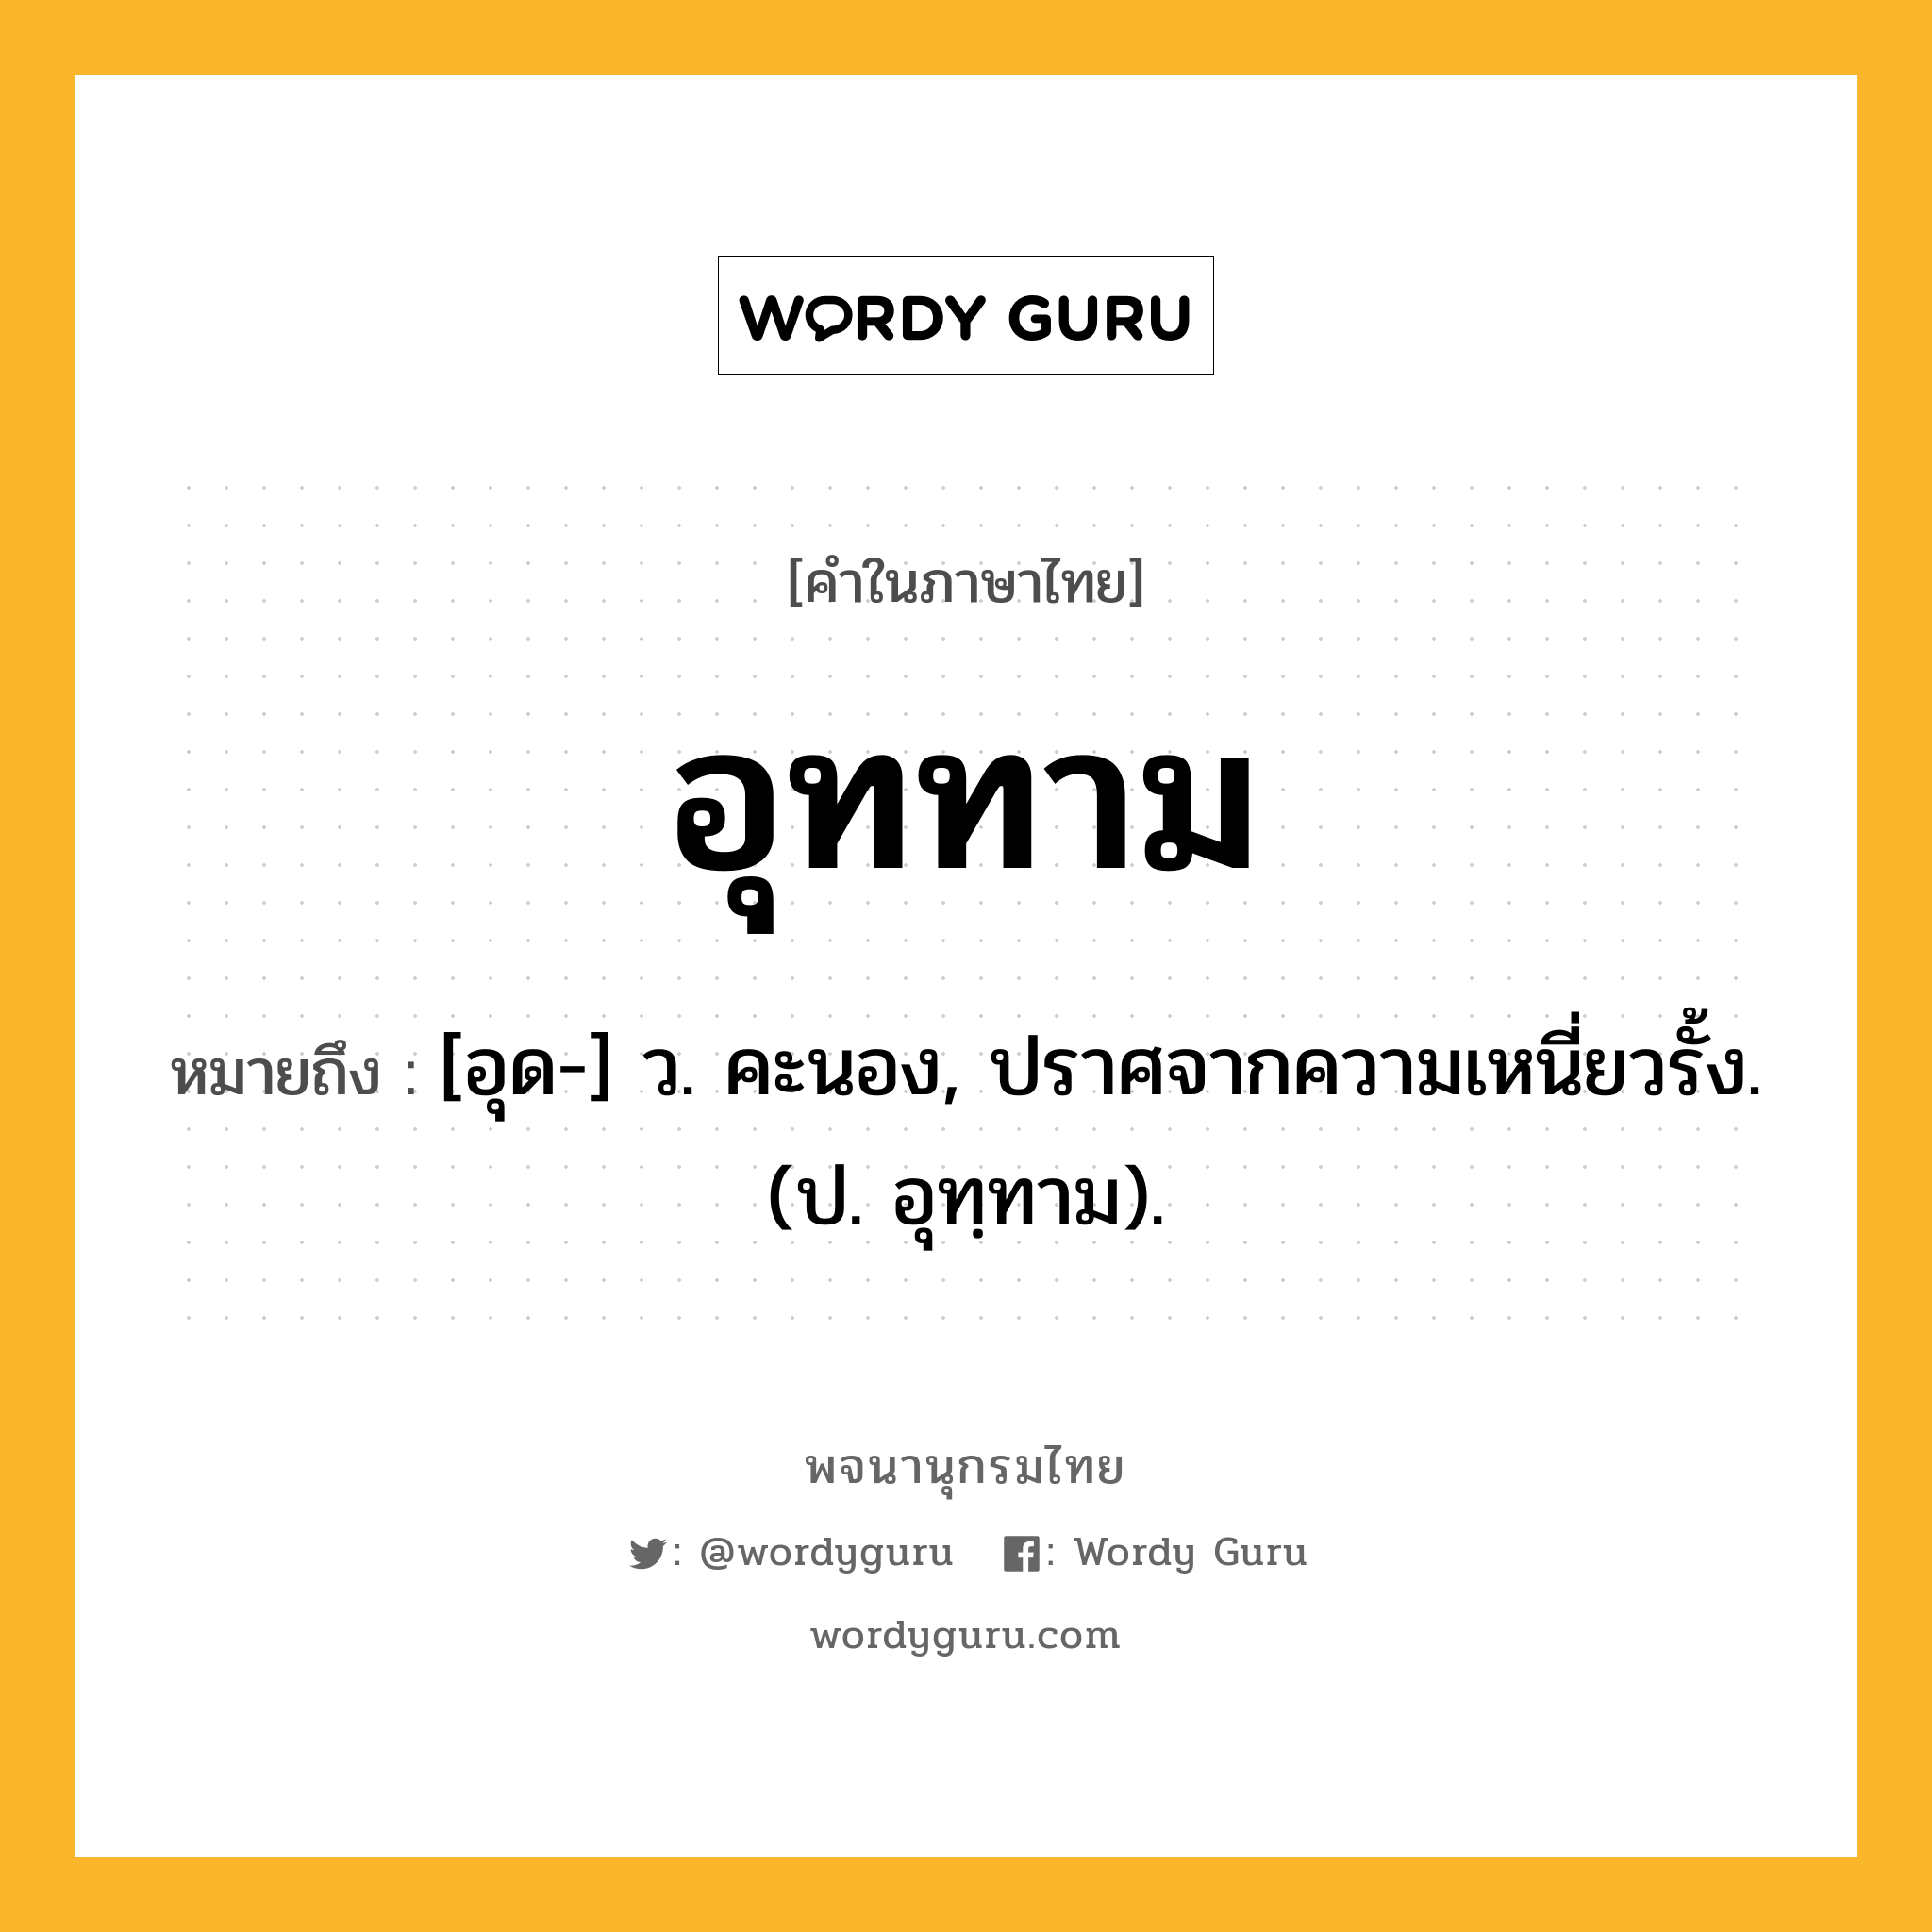 อุททาม ความหมาย หมายถึงอะไร?, คำในภาษาไทย อุททาม หมายถึง [อุด-] ว. คะนอง, ปราศจากความเหนี่ยวรั้ง. (ป. อุทฺทาม).